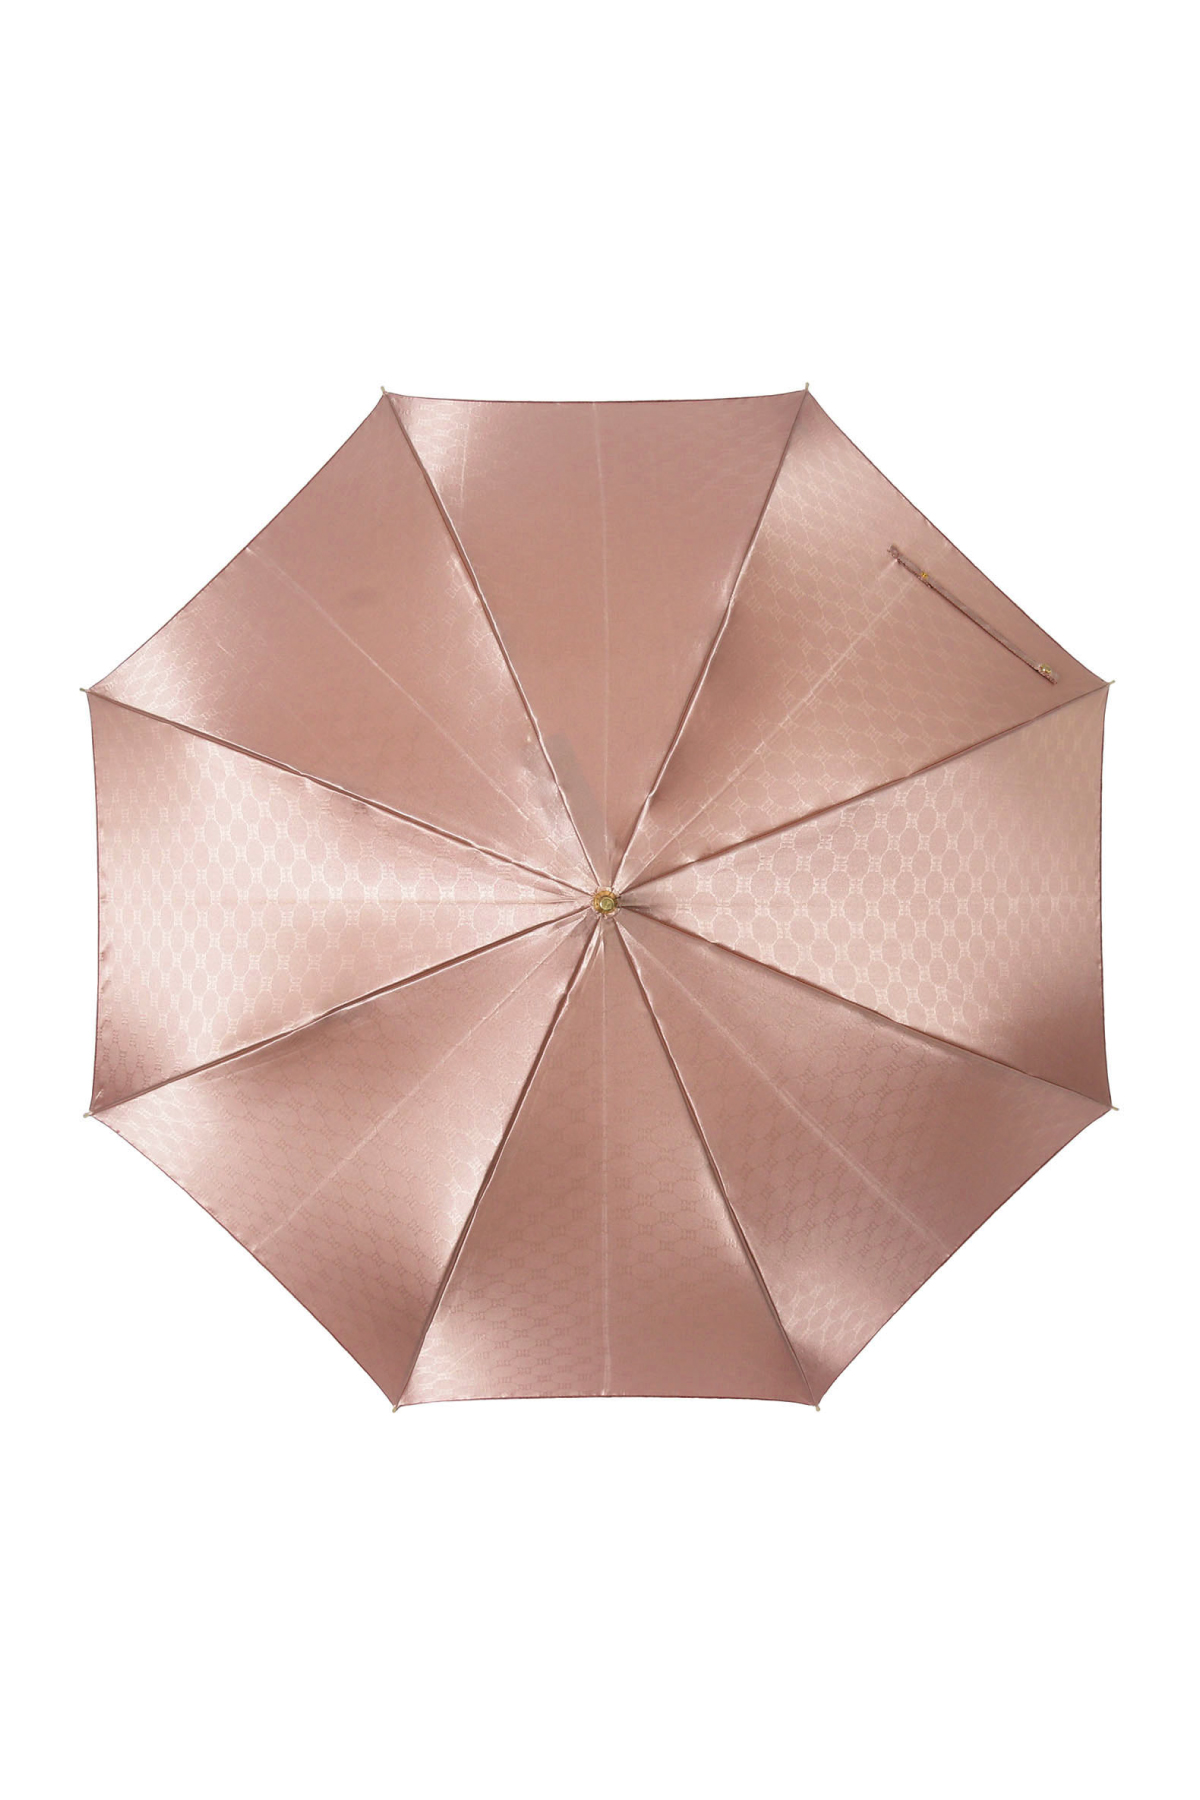 【雨傘】長傘耐風ジャンプ両面カチオン裏ロゴ 詳細画像 6